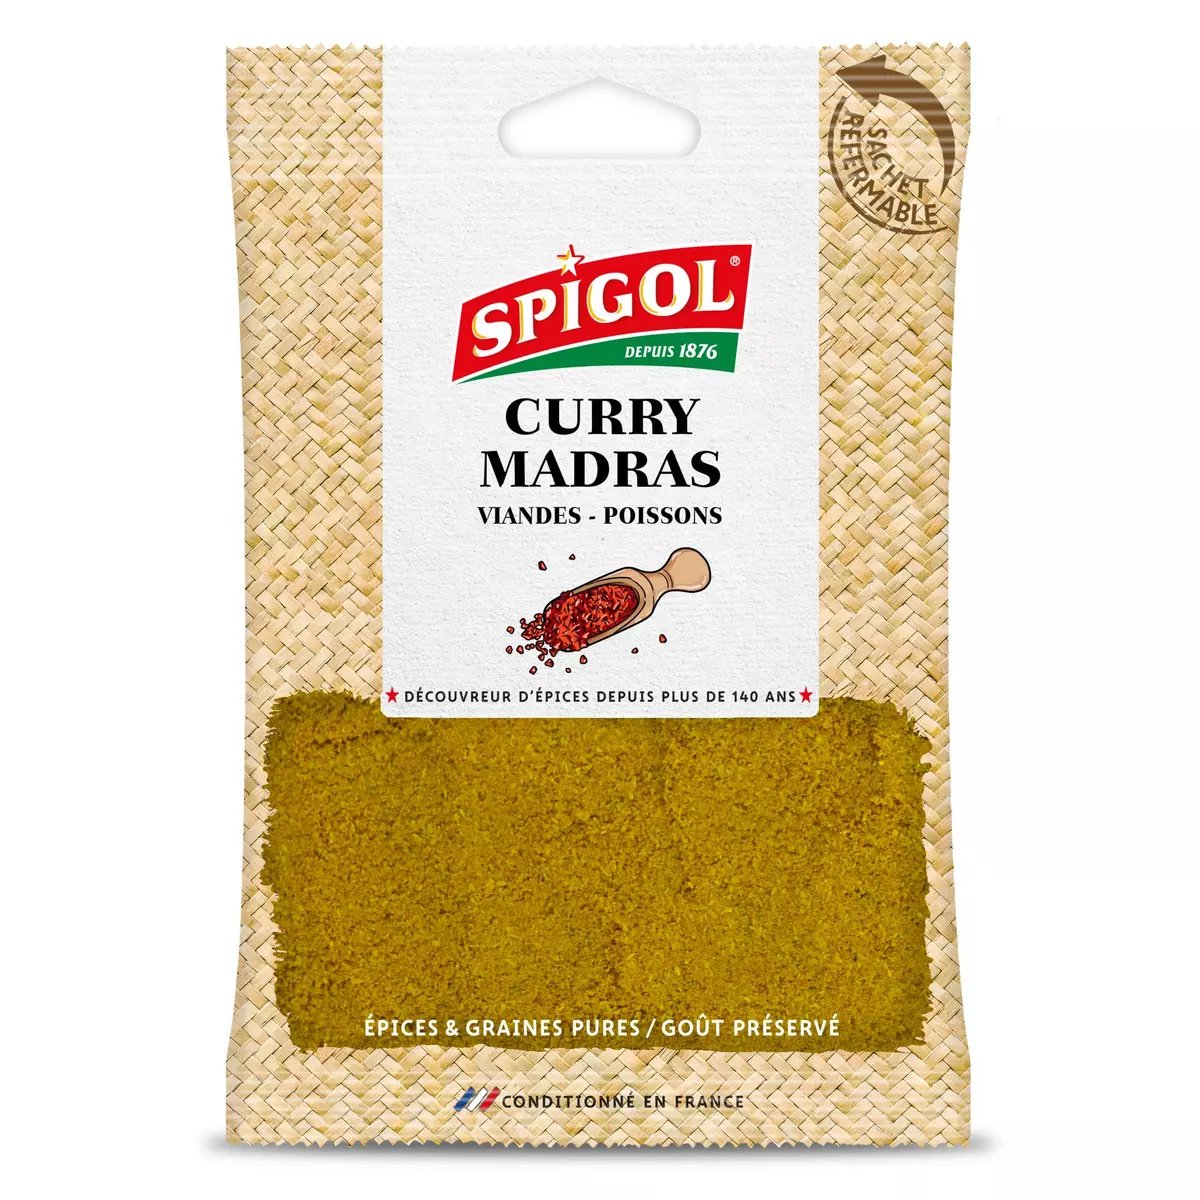 SPIGOL Curry madras 70g